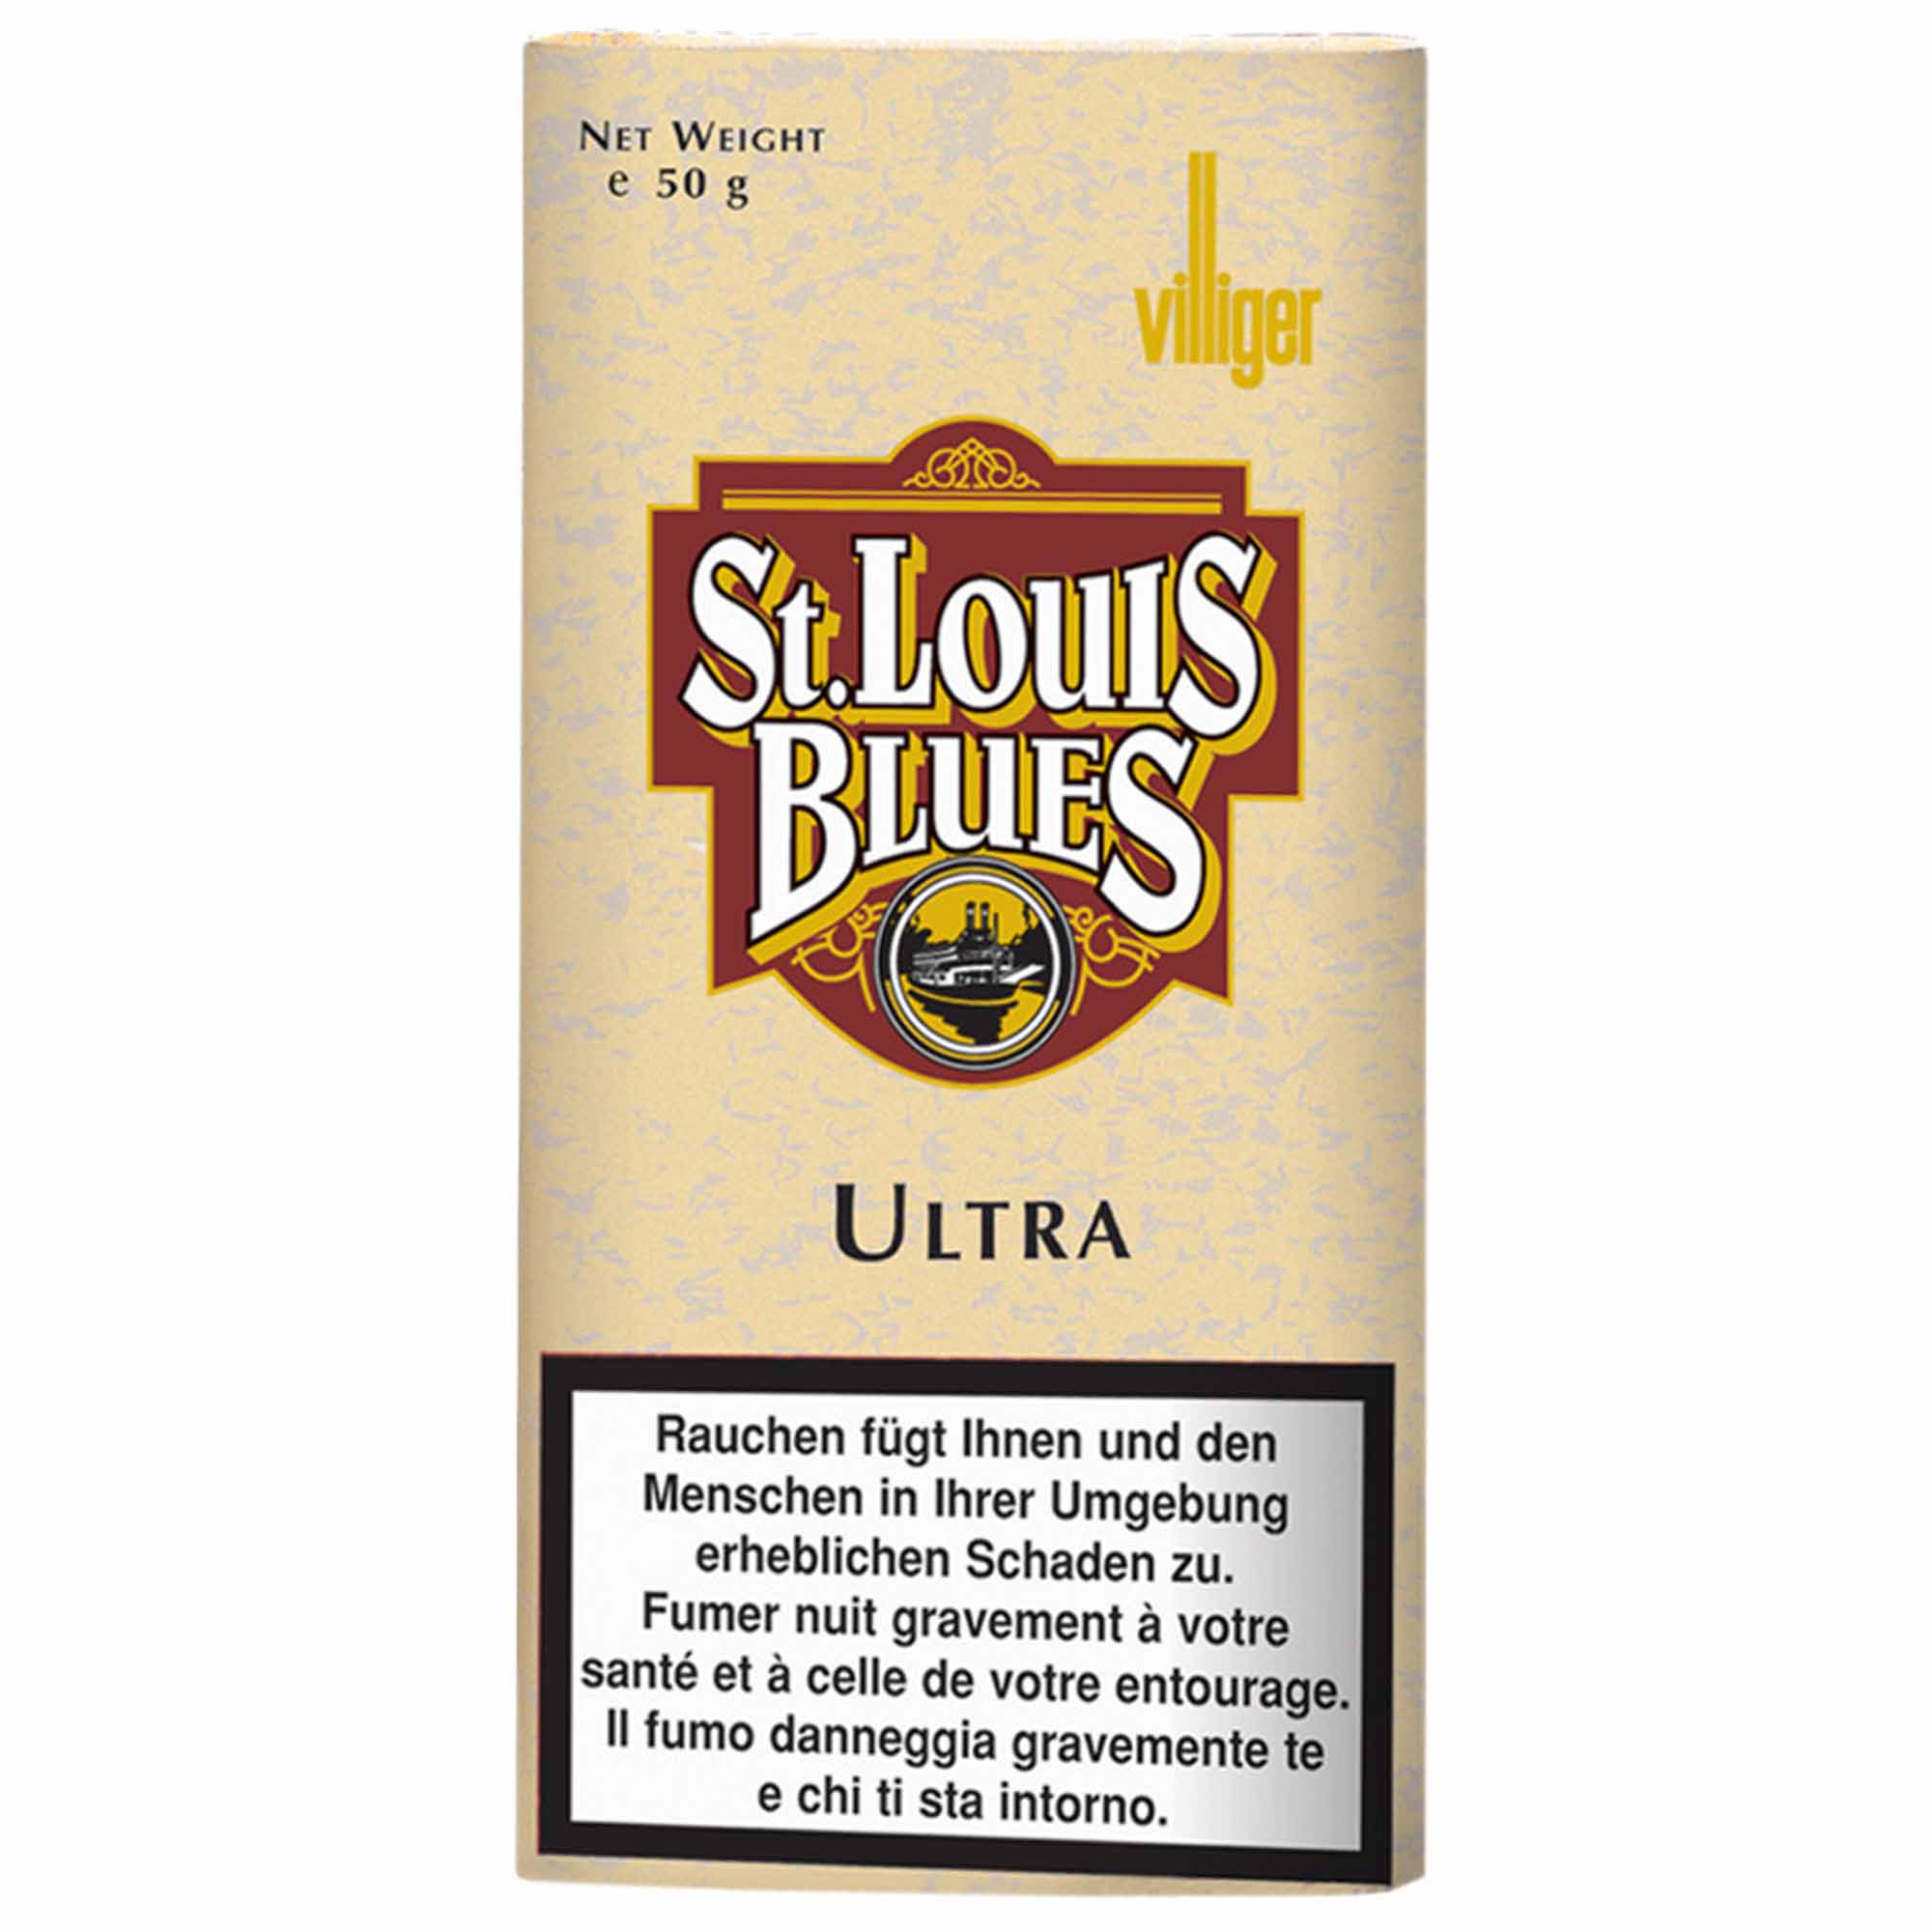 St. Louis Blues Ultra - 50g Beutel